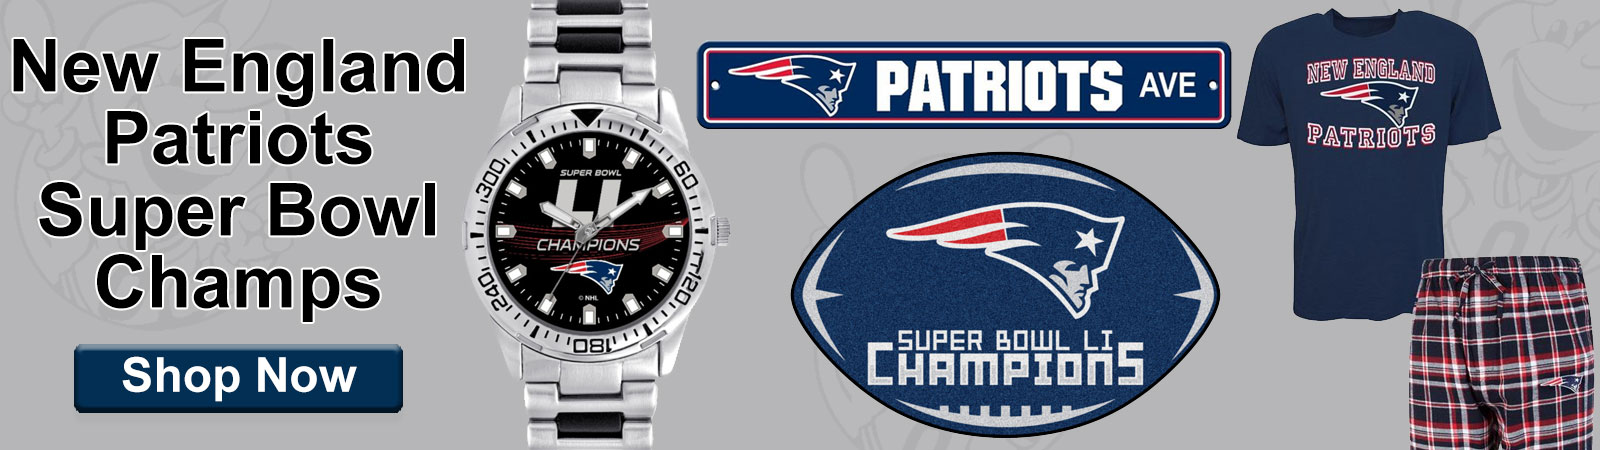 New England Patriots Super Bowl LI Champs